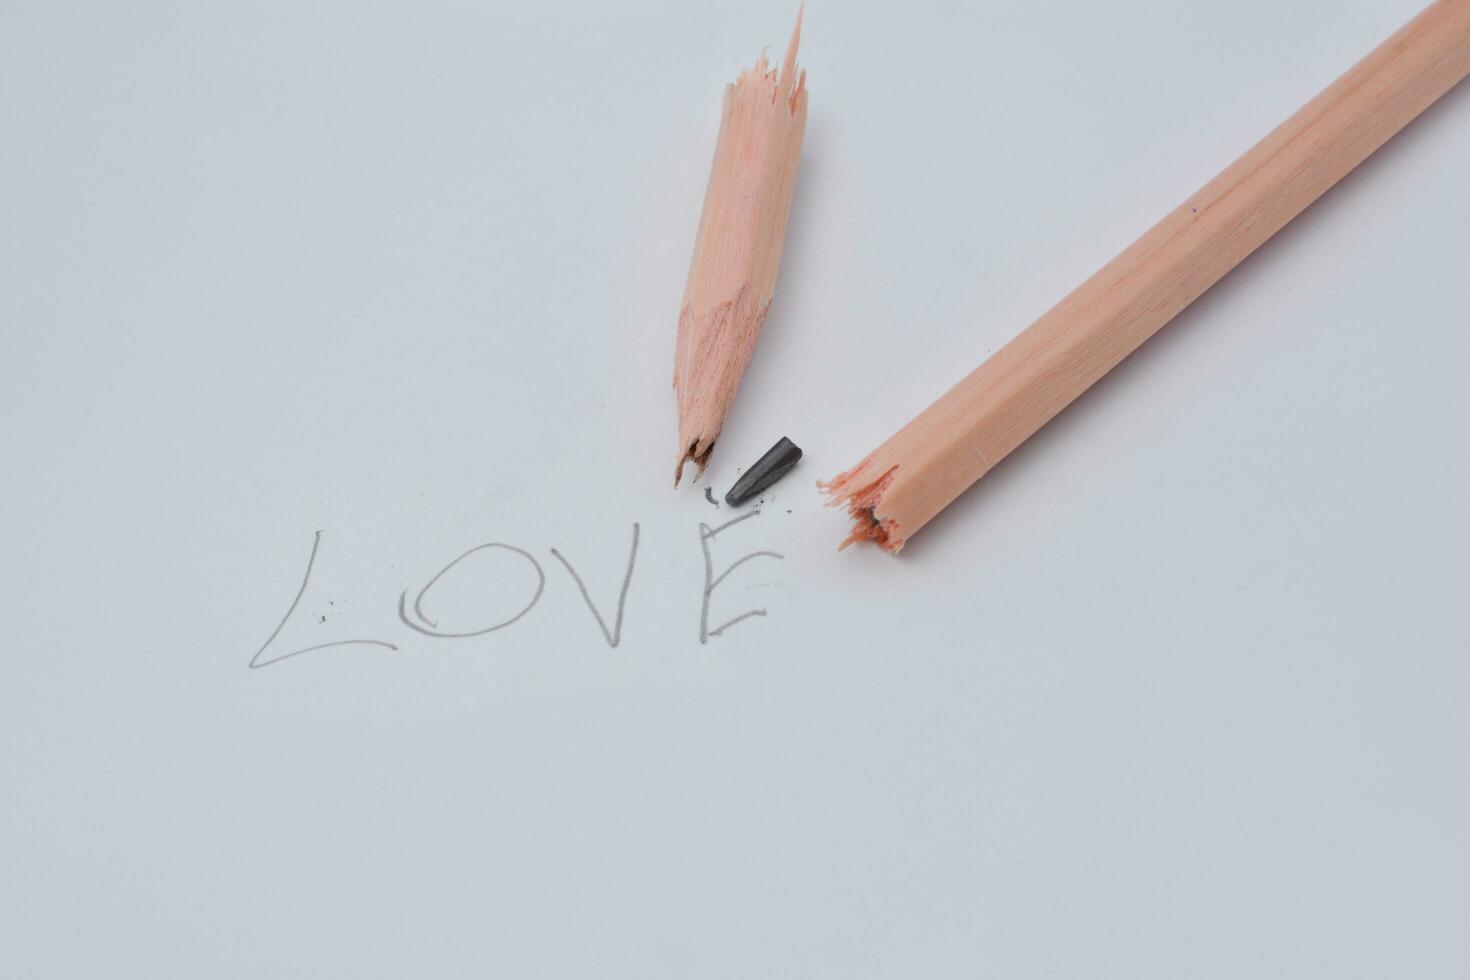 gebroken potlood. schrijven met een potlood de woord liefde. wit achtergrond. foto